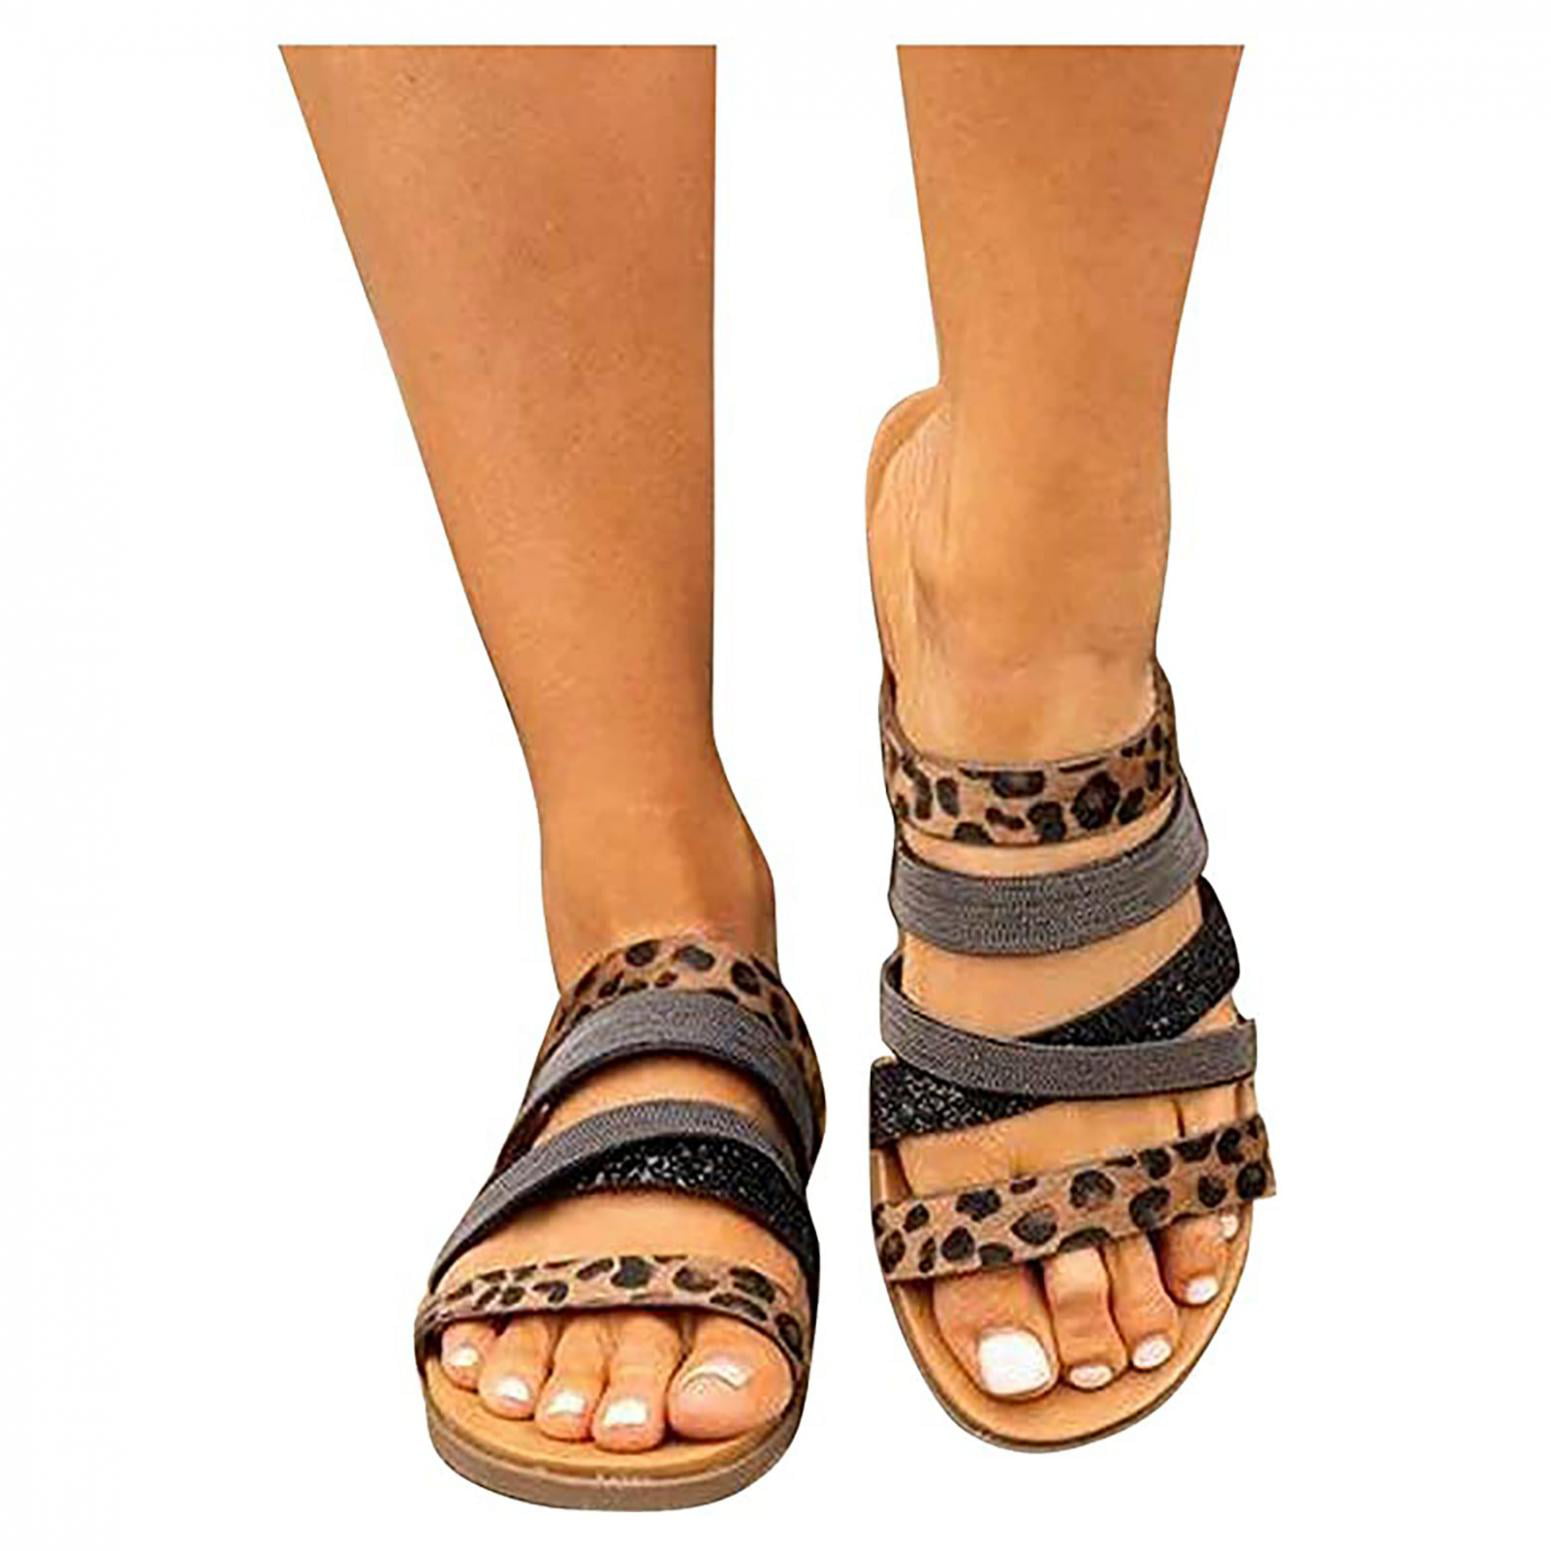 Wedge Sandals for Women Dressy Summer Crystal Hollow Out Flat Sandals Zipper Open Toe Beach Roman Flat Sandals 